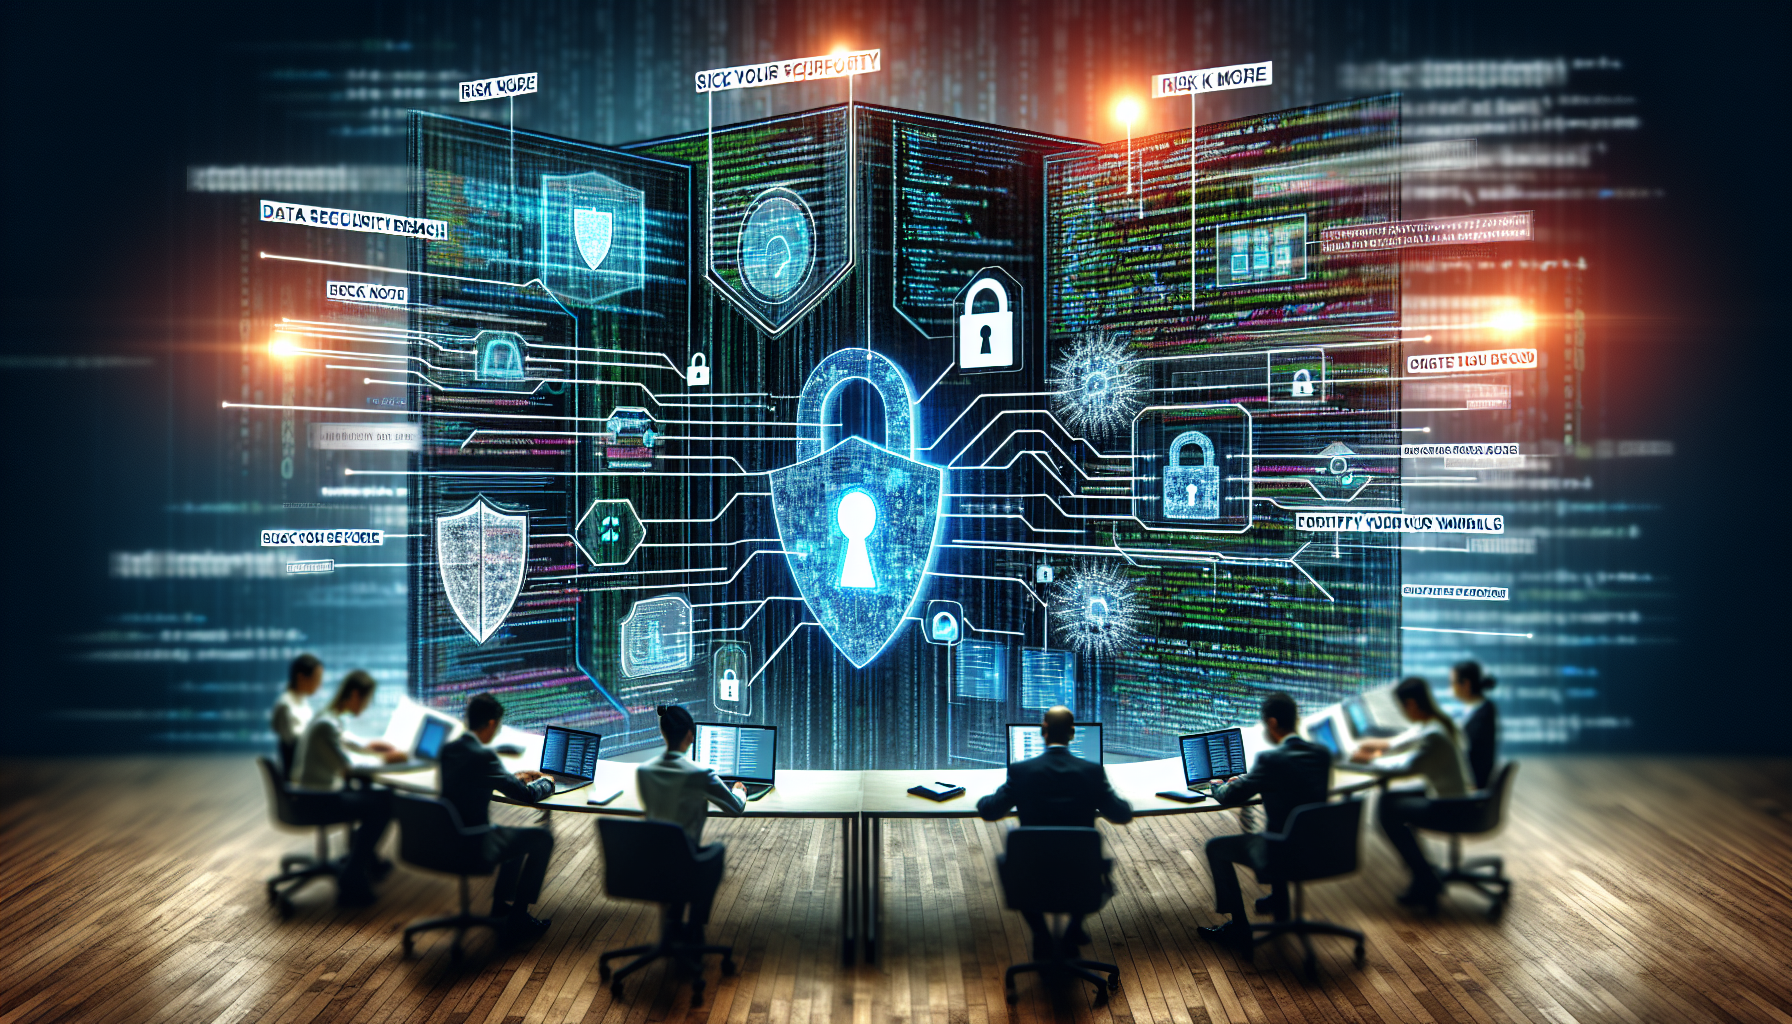 découvrez nos formations en cybersécurité avec focus sur l'analyse des risques et les meilleures pratiques en matière de sécurité informatique.